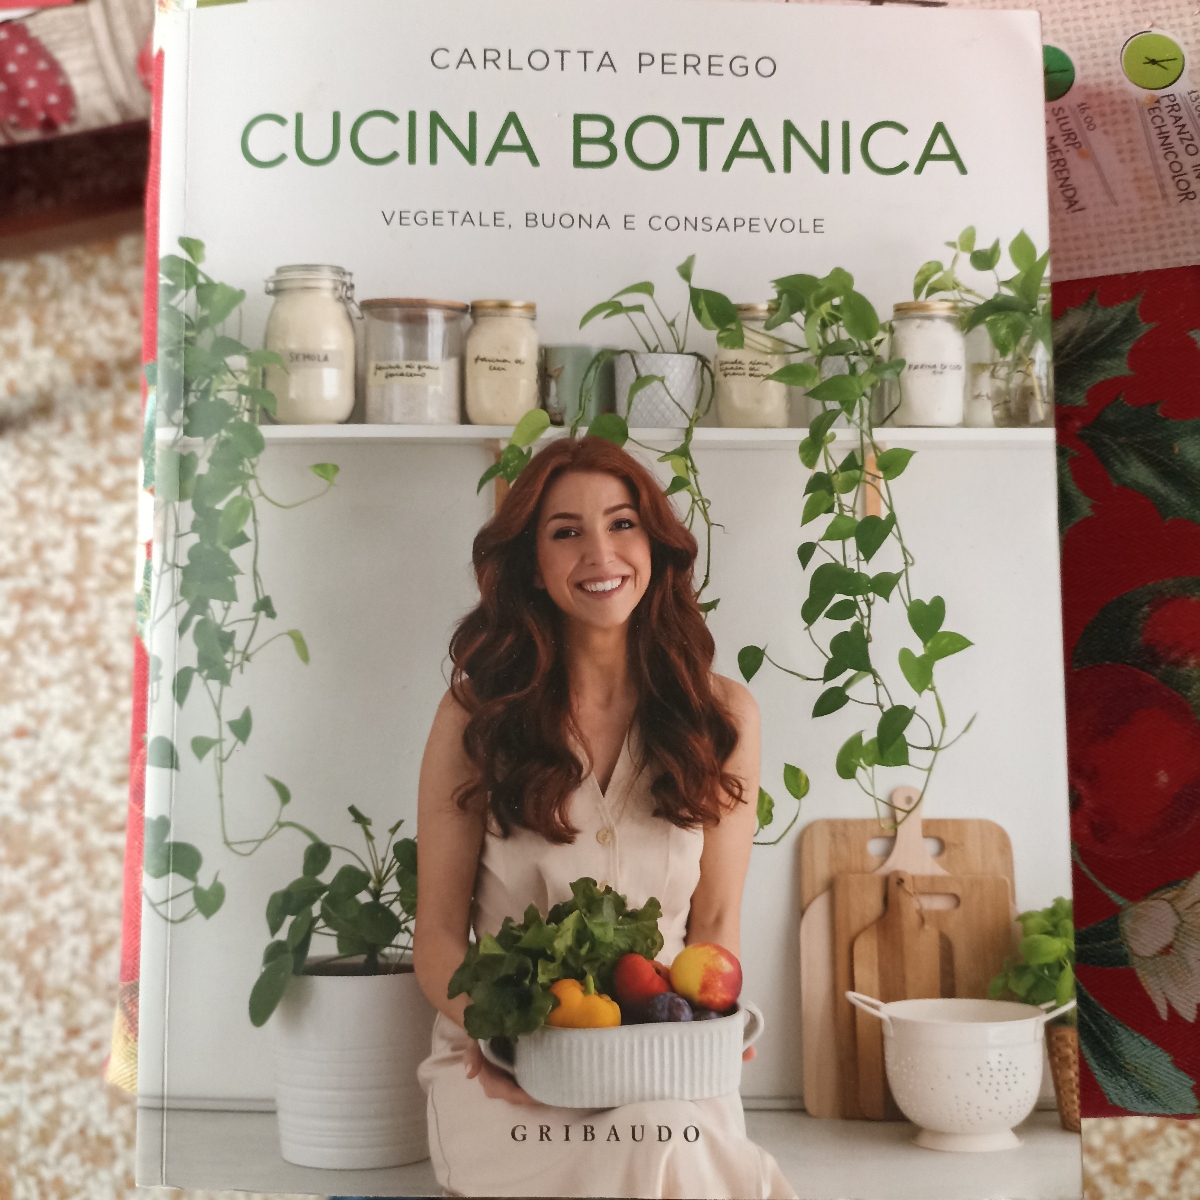 Cucina botanica Cucina Botanica Reviews